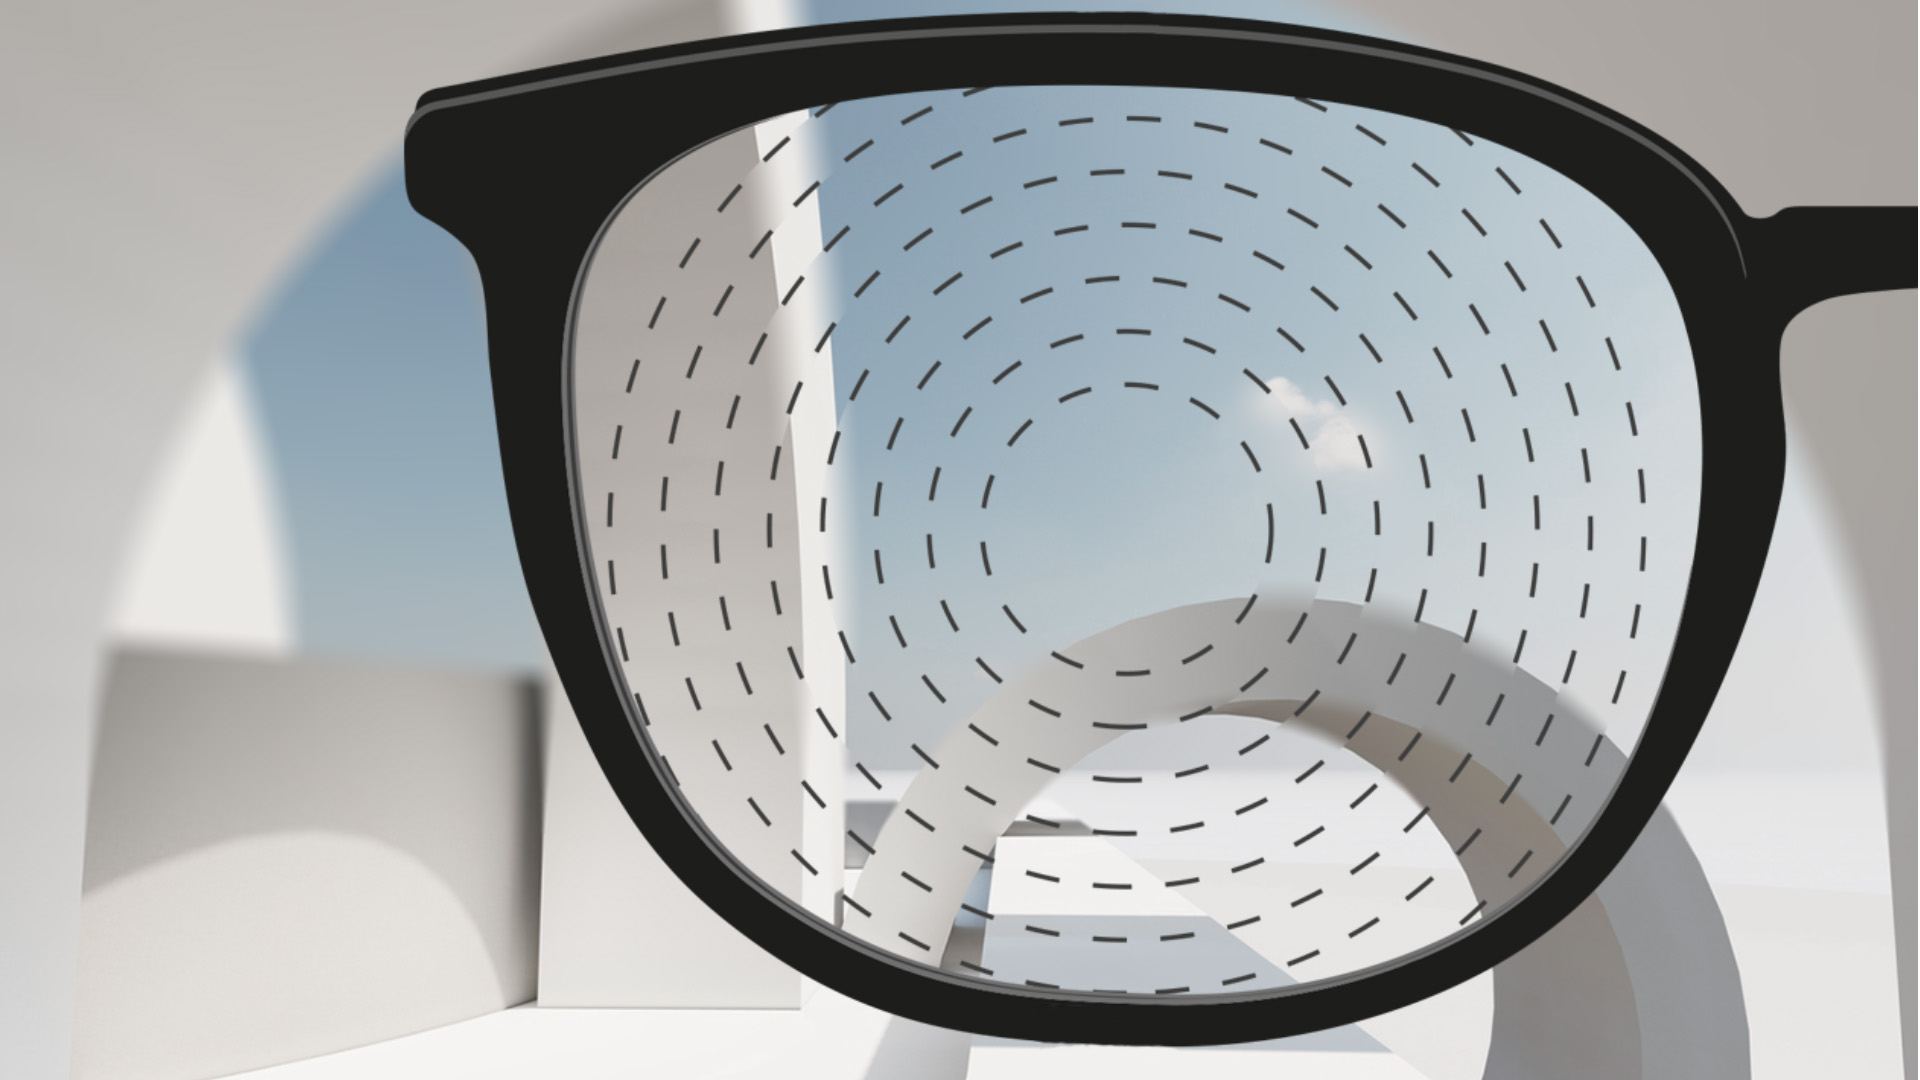 Et udsnit af et billede med brilleglas til myopikontrol fra ZEISS.